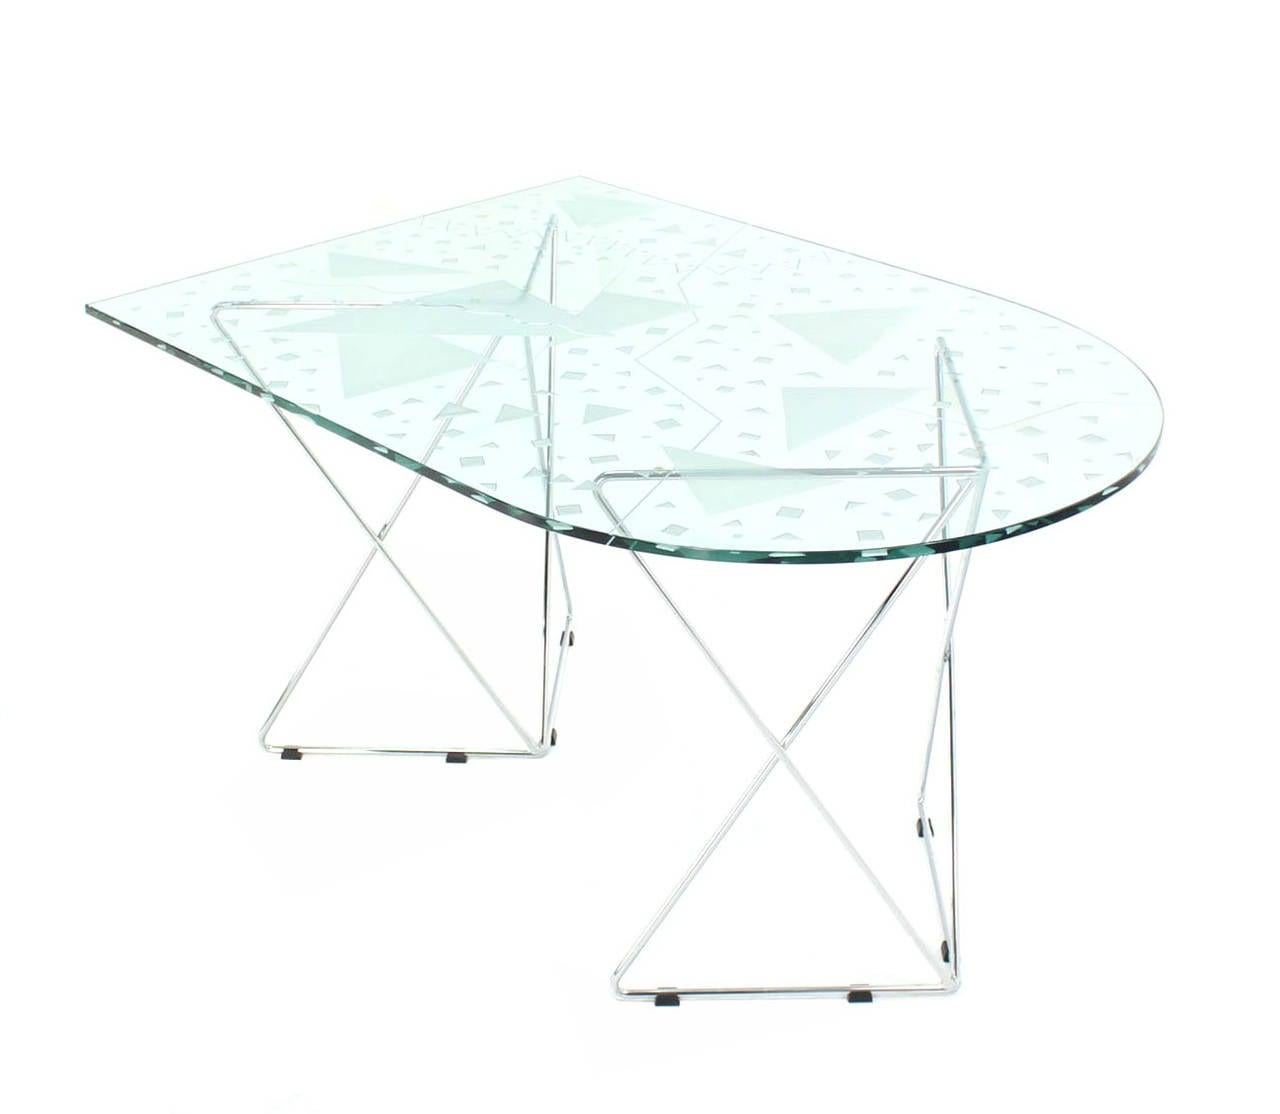 Table de salle à manger en verre d'art avec plateau gravé et base en fil de fer chromé signée par l'artiste MINT !
Plateau en verre ovale et carré en forme de fer plat.